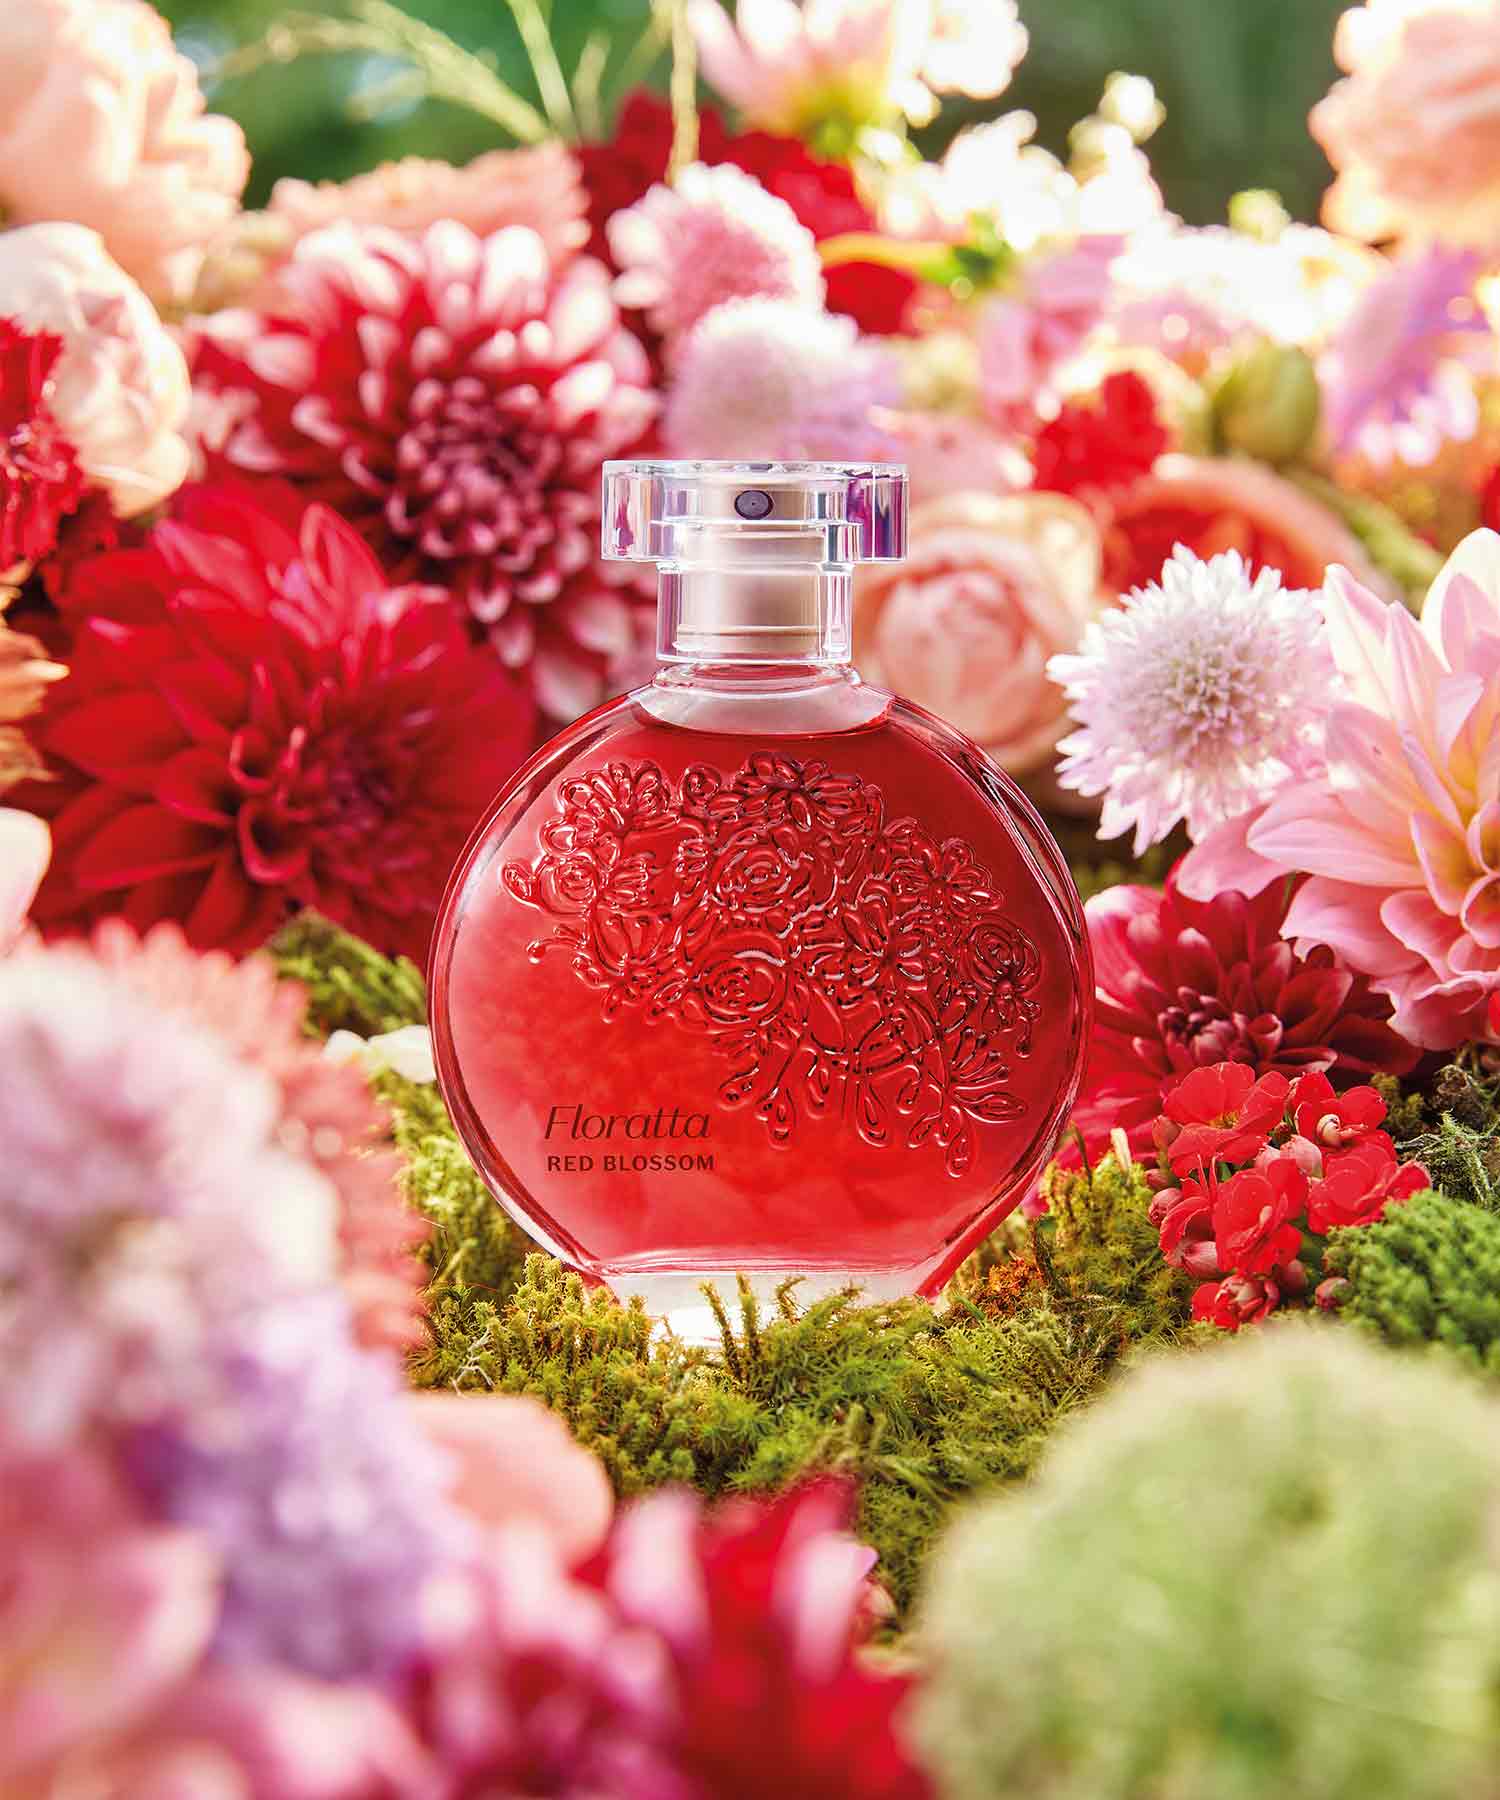 Frasco de perfume Floratta Red num ambiente floral alusivo ao Dia da Mãe. A embalagem é em vidro transparente, com um líquido vermelho intenso dentro e uma tampa transparente. O rótulo tem o nome do perfume em letras elegantes e o desenho floral no frasco.